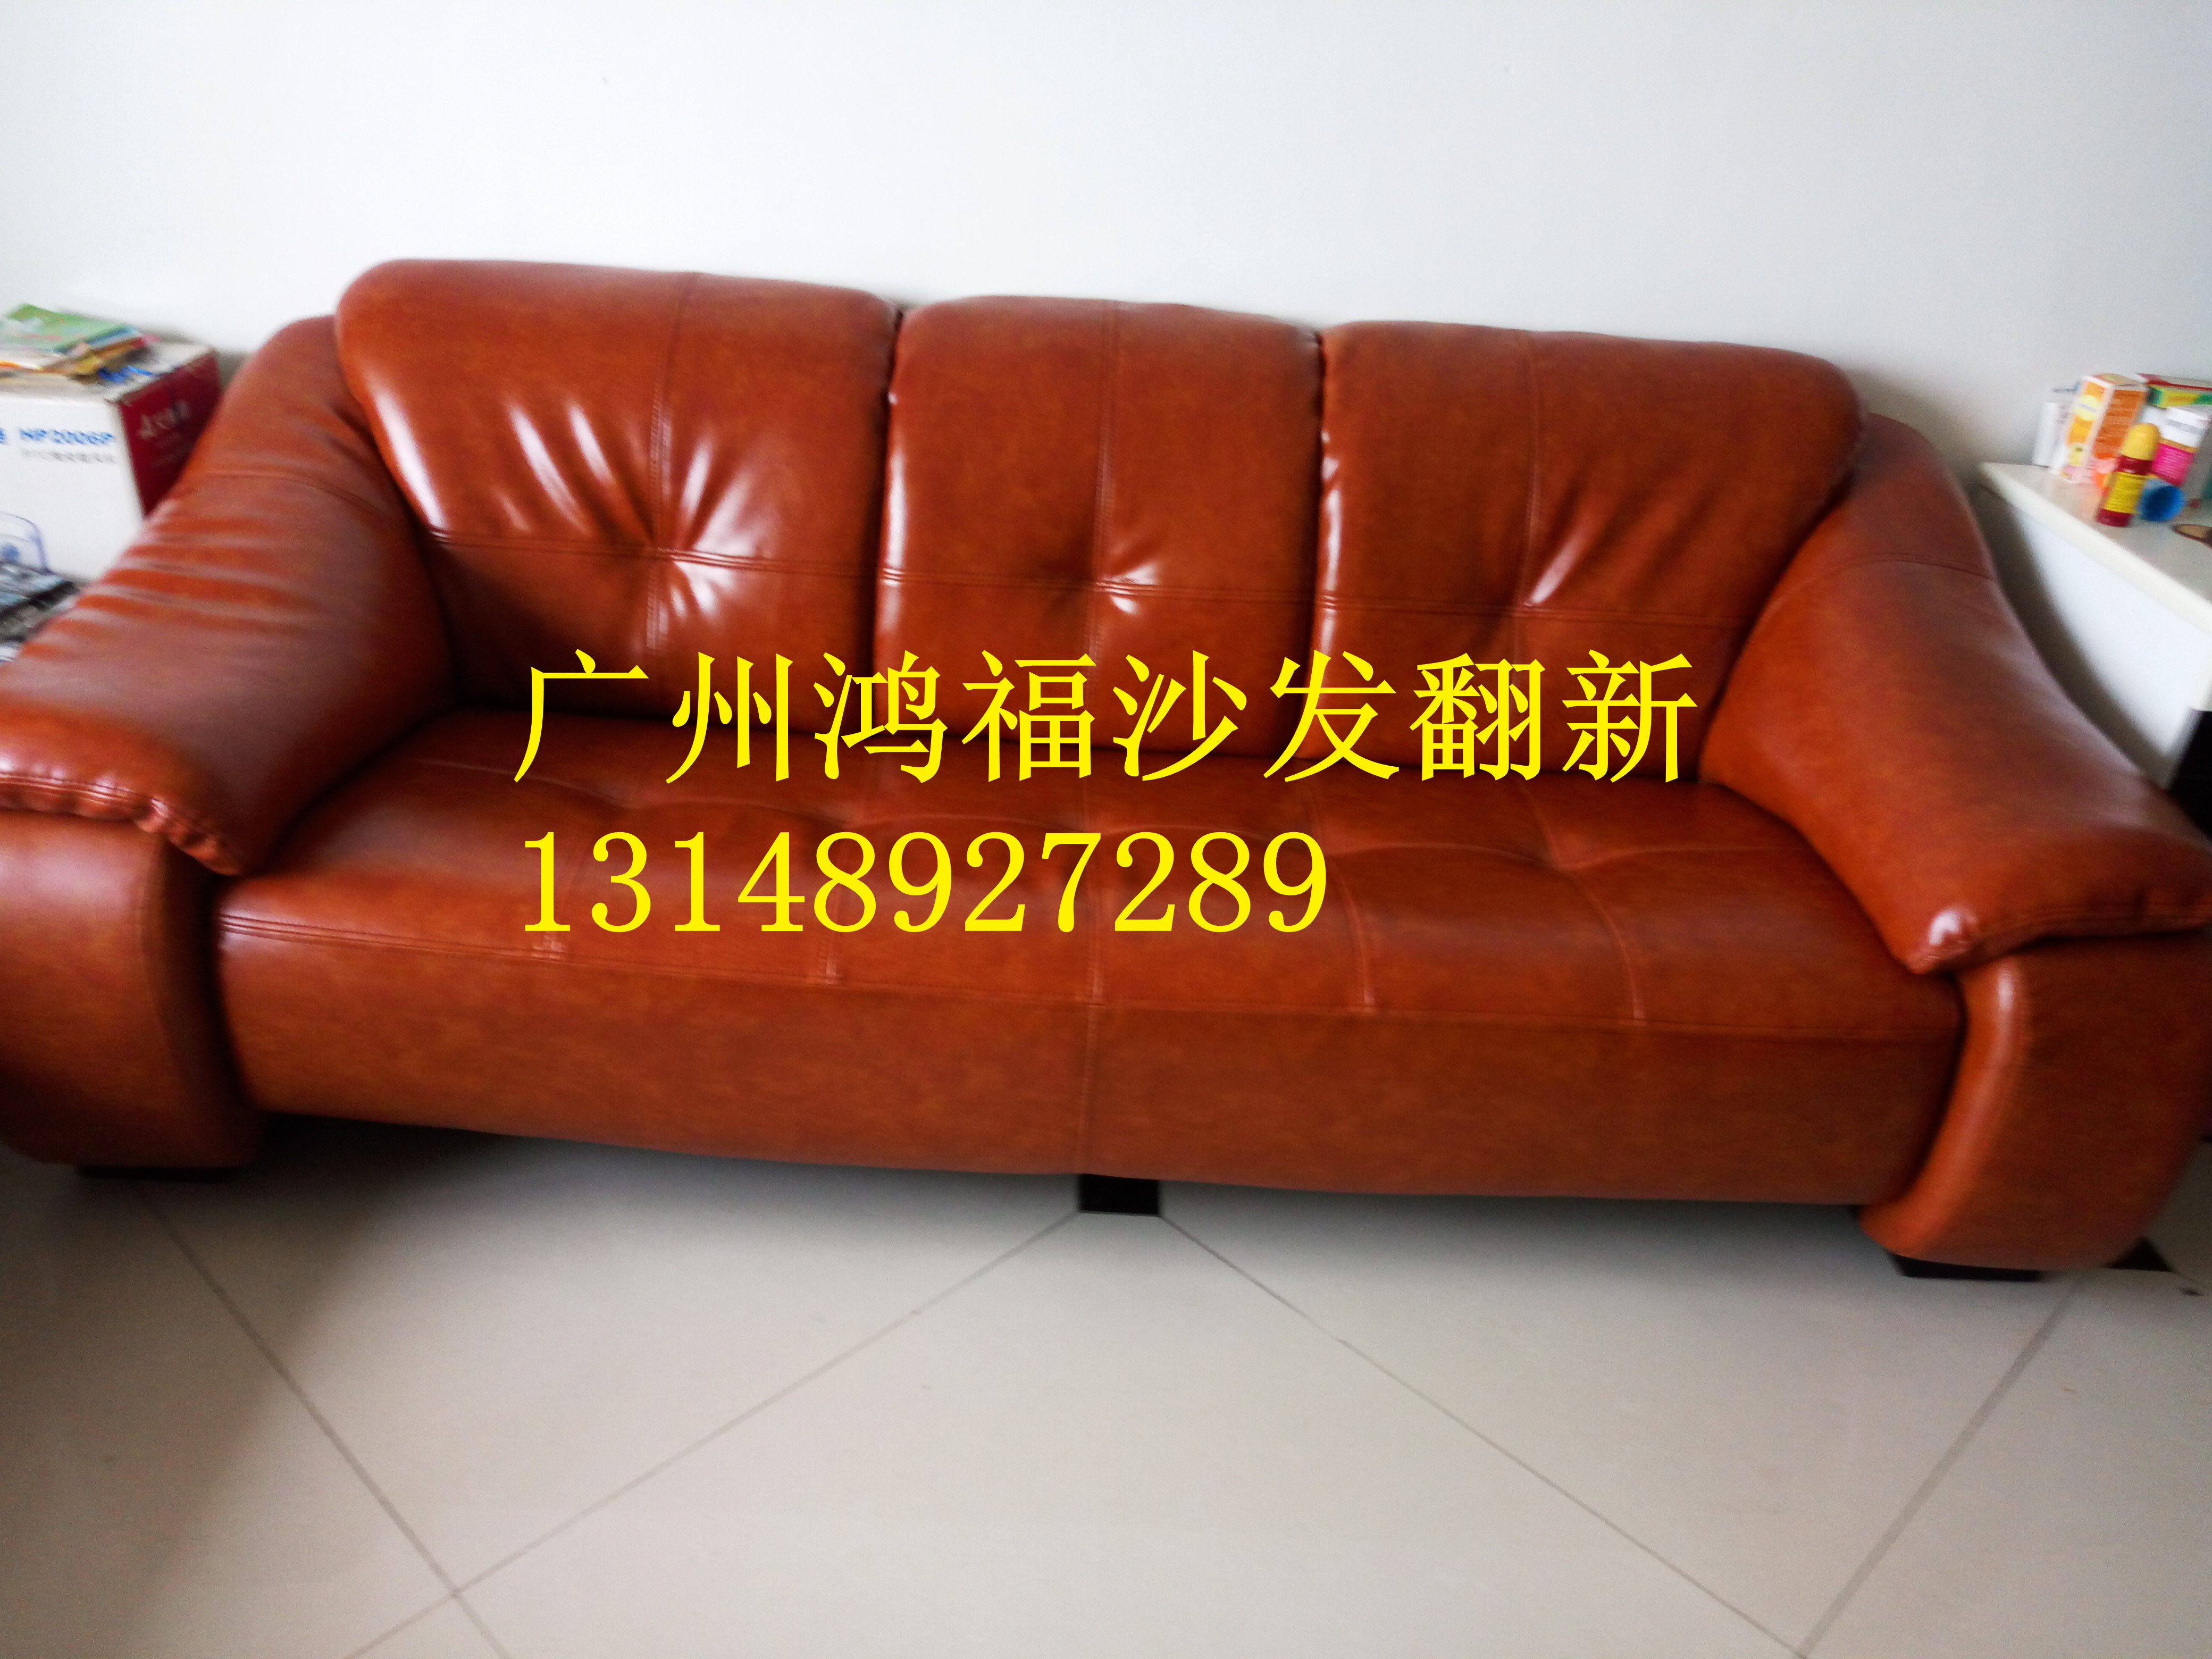 供应广州海珠区沙发翻新换皮换布、酒店沙发、餐椅、床头